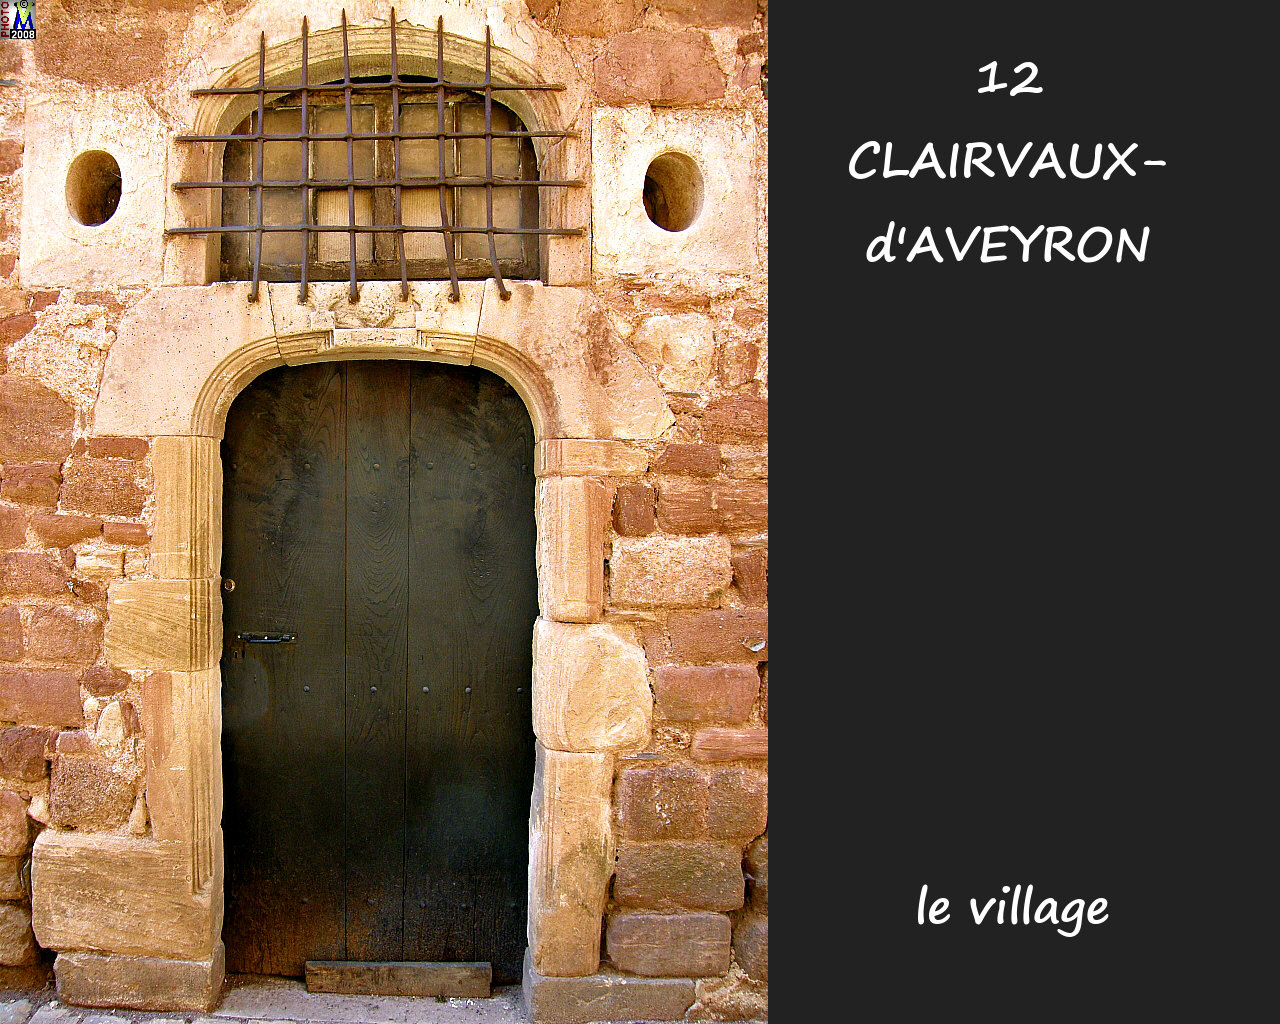 12CLAIRVAUX-AVEYRON_village_124.jpg